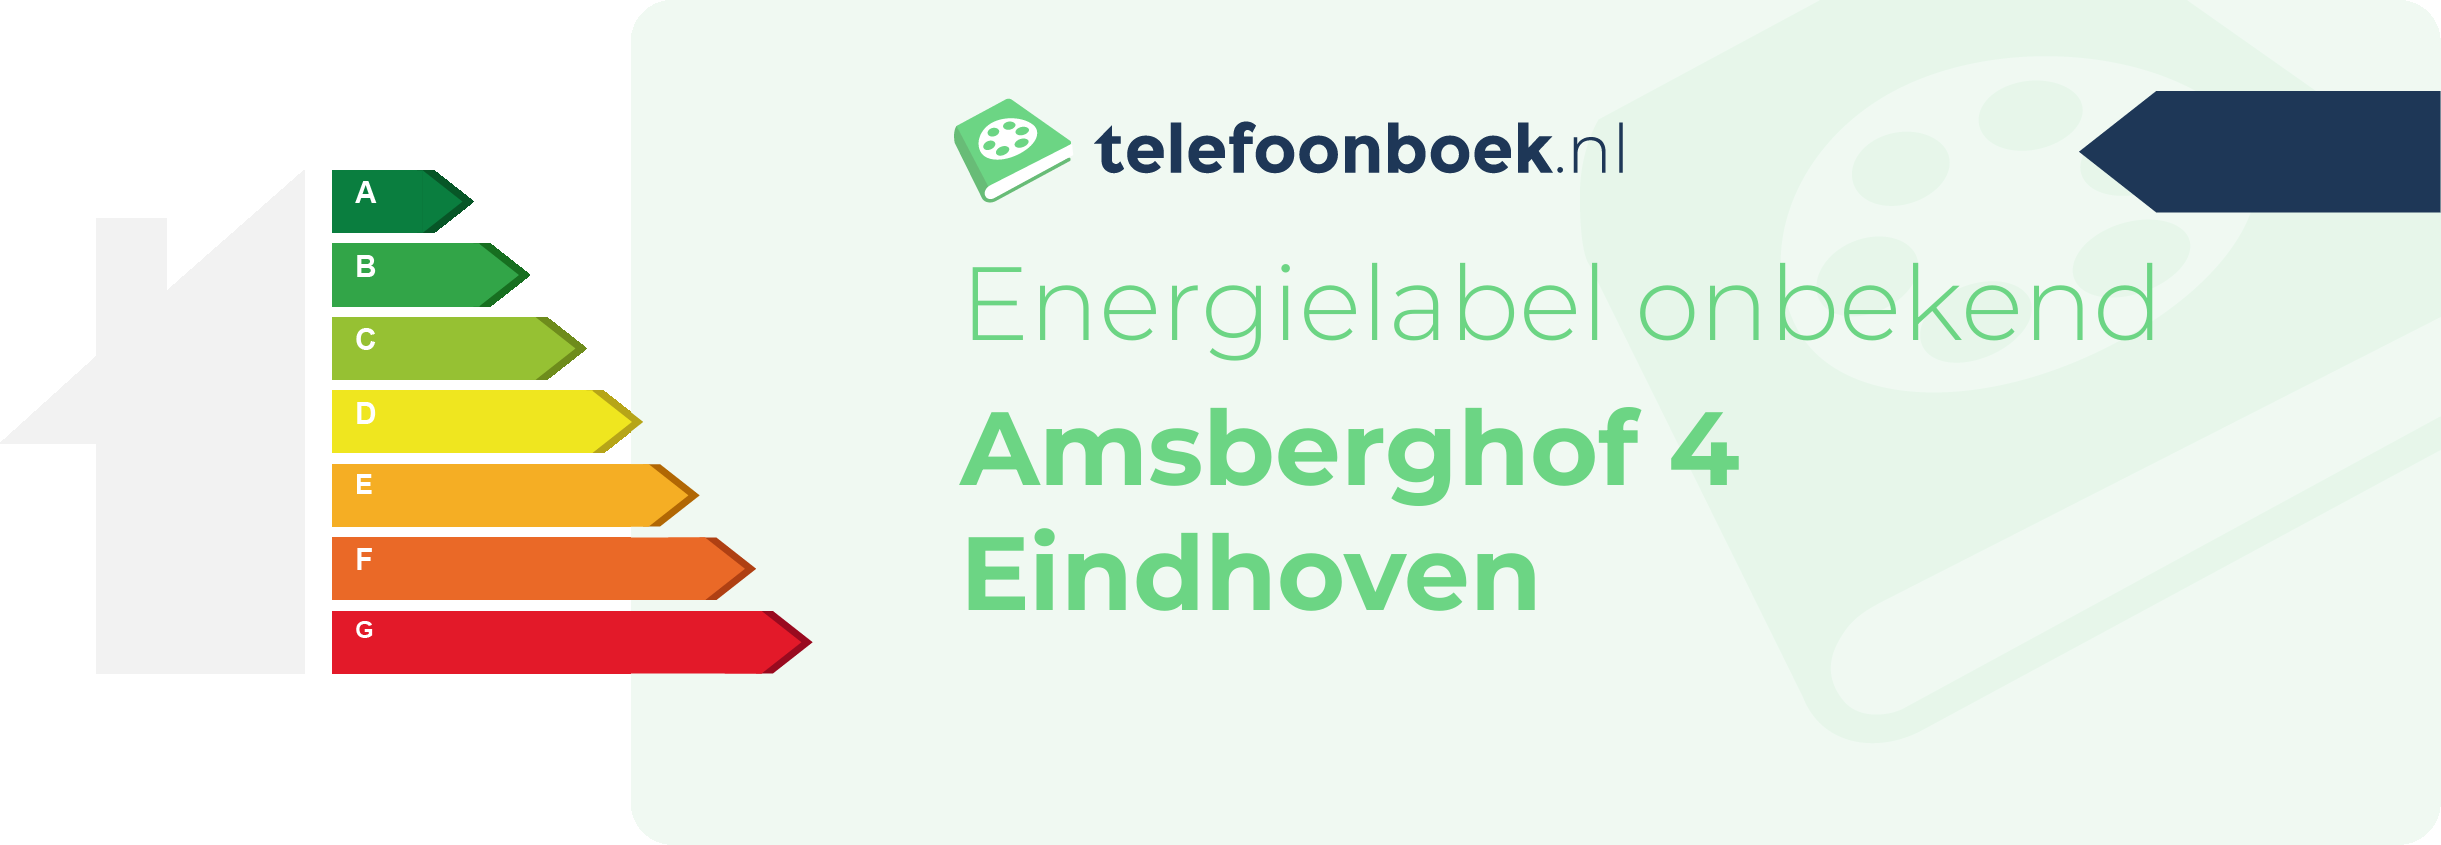 Energielabel Amsberghof 4 Eindhoven